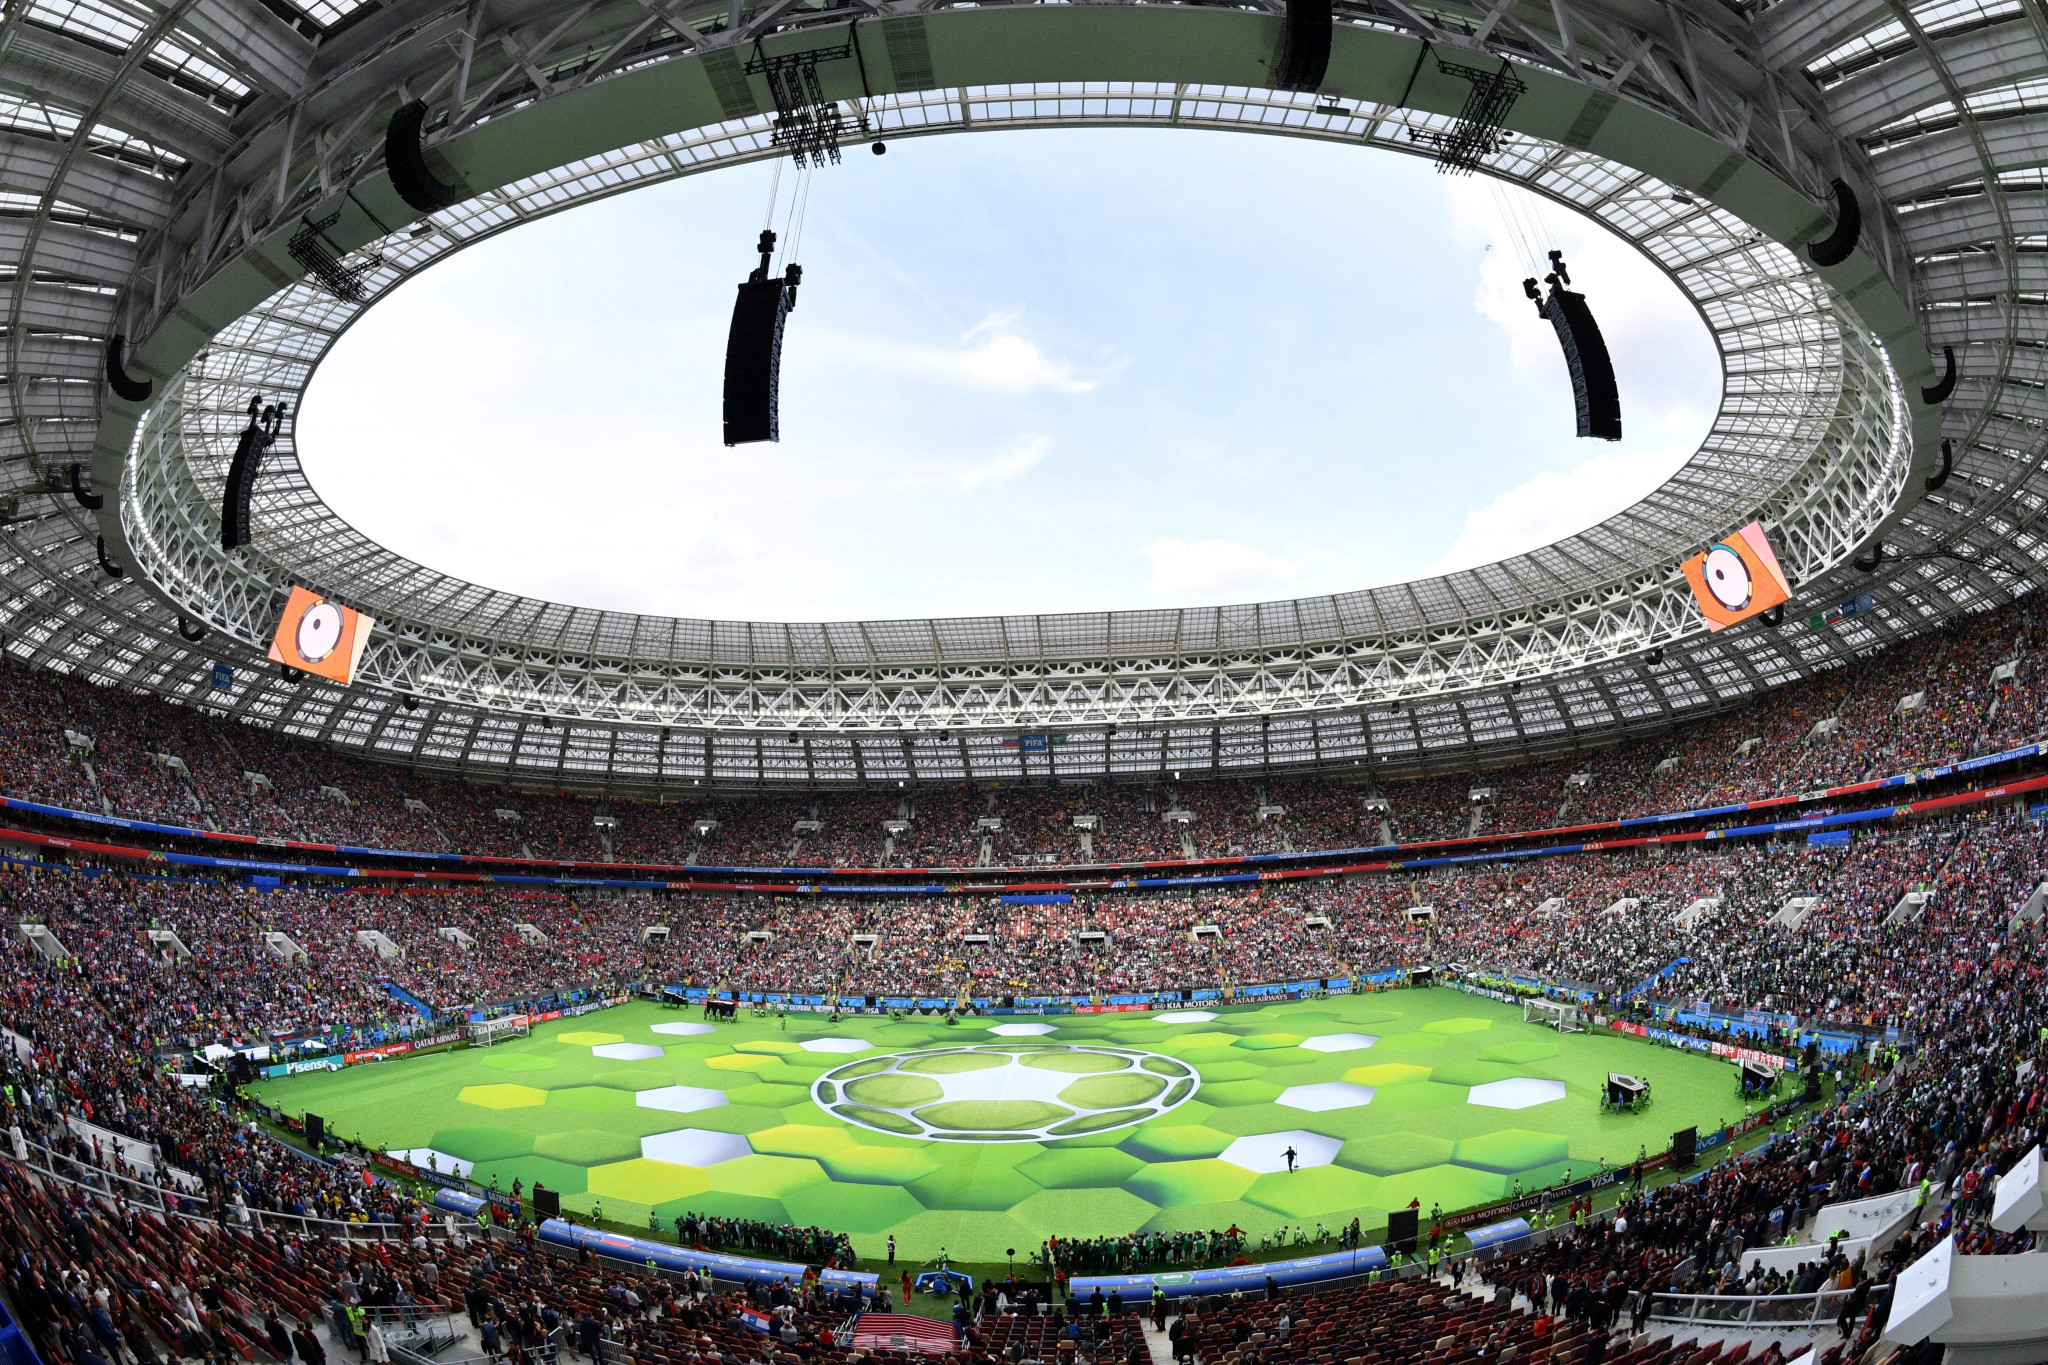 Over 70,000 fans were in the Luzhniki Stadium ©Getty Images